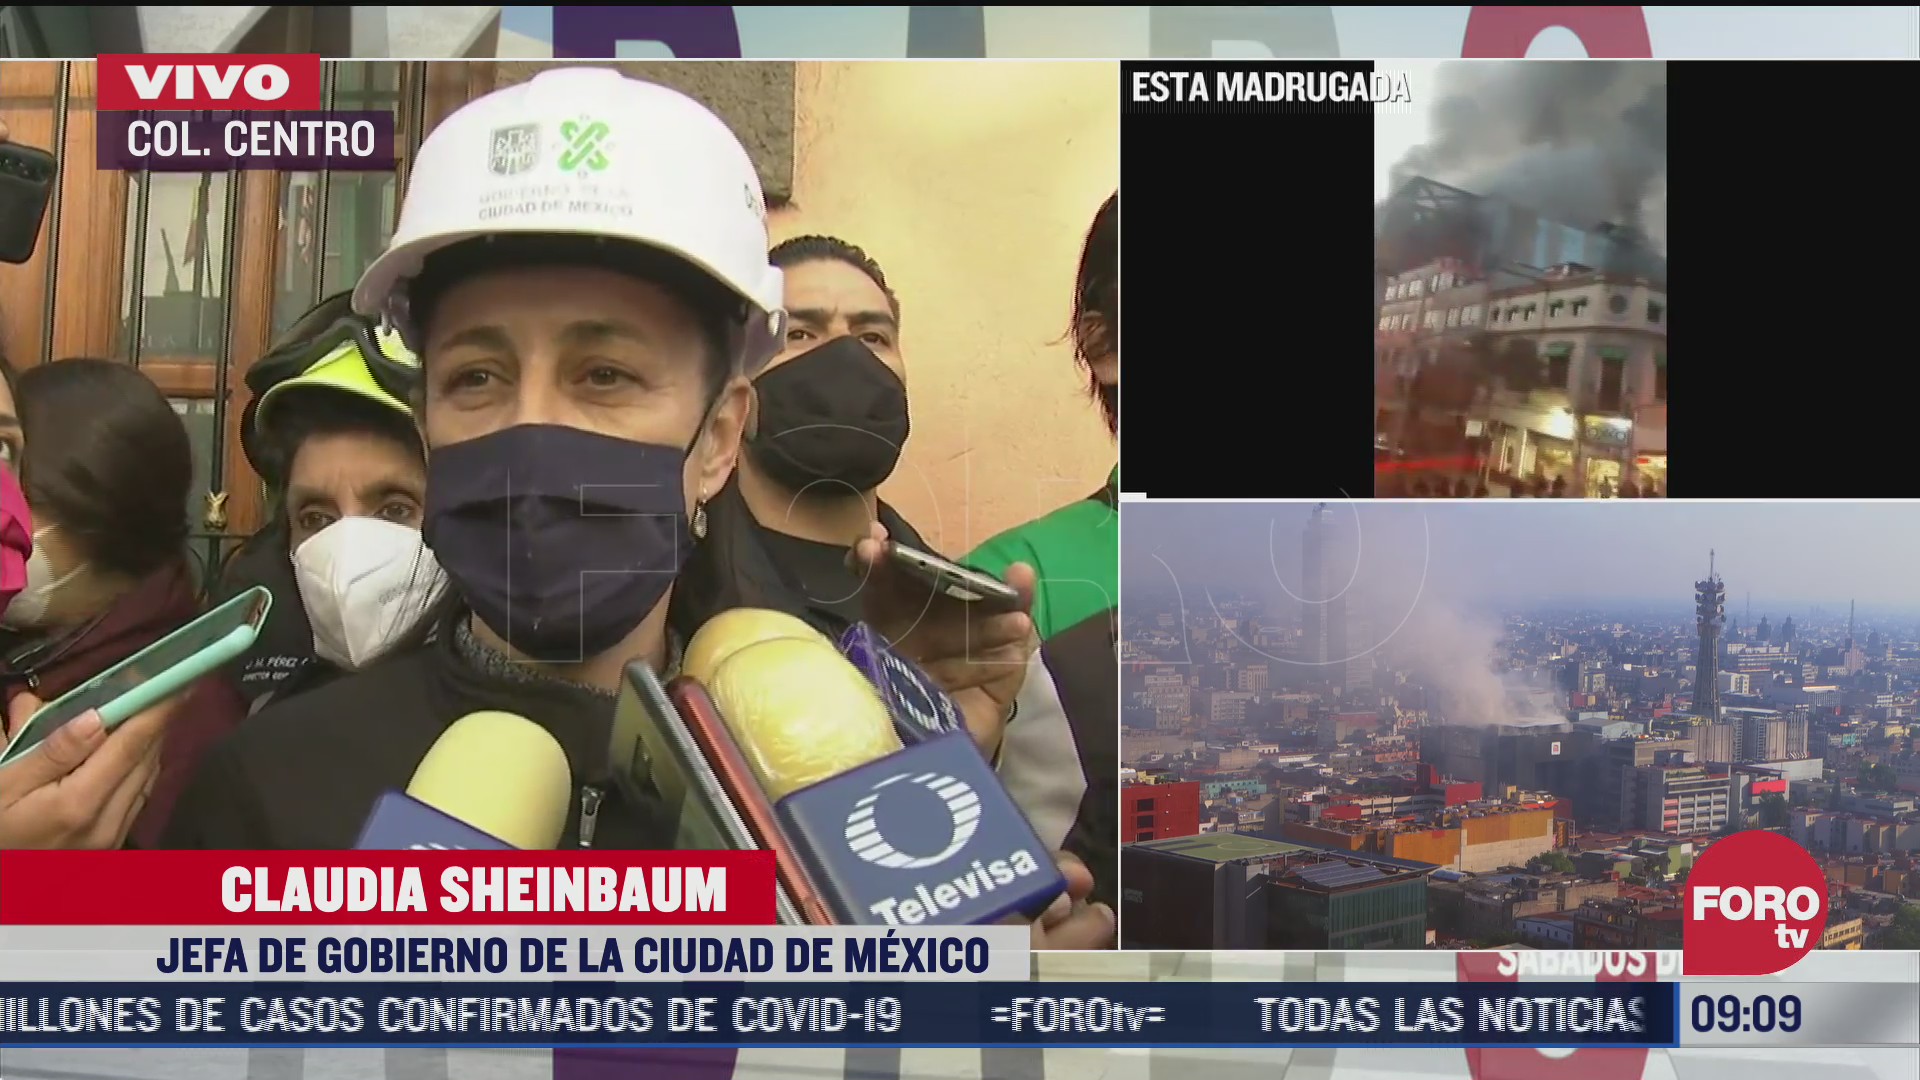 sheinbaum detalla como fue el incendio en centro de control 1 del metro